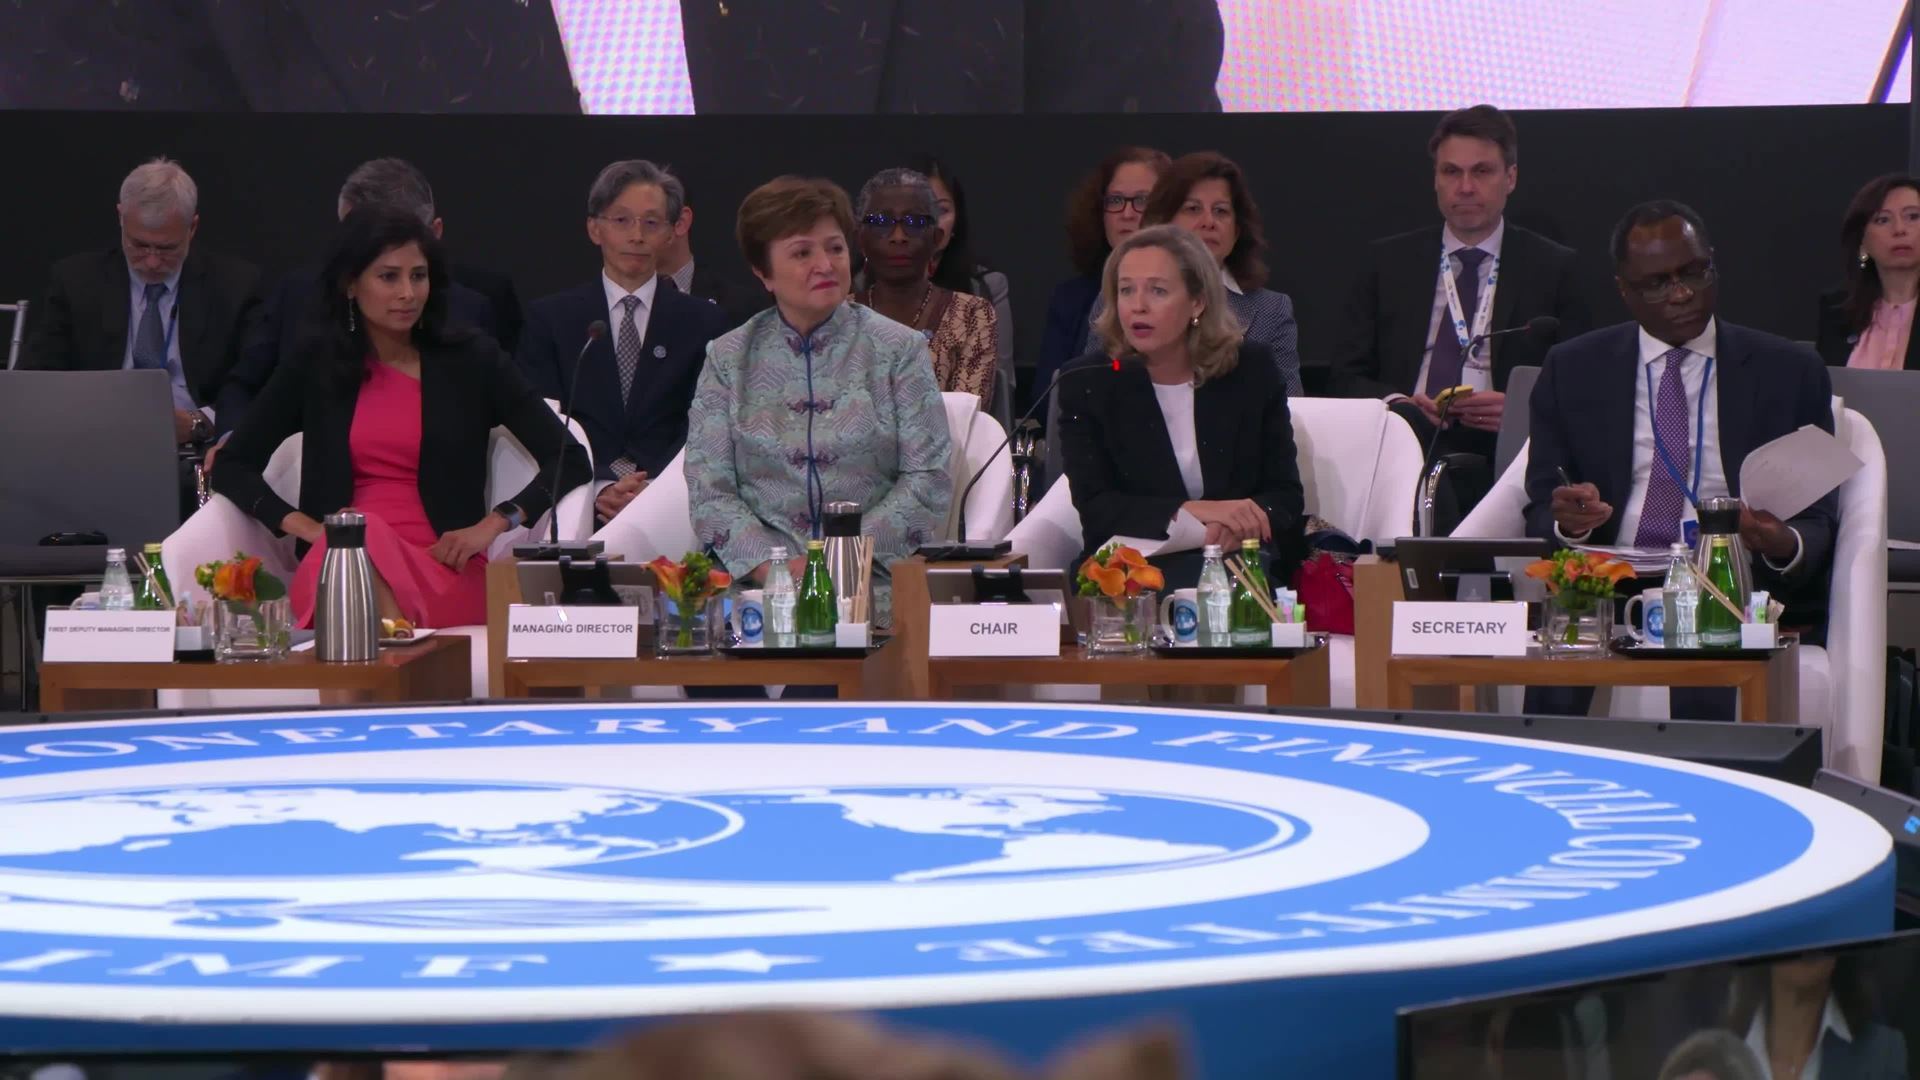 IMF Meetings Plenary B-Roll